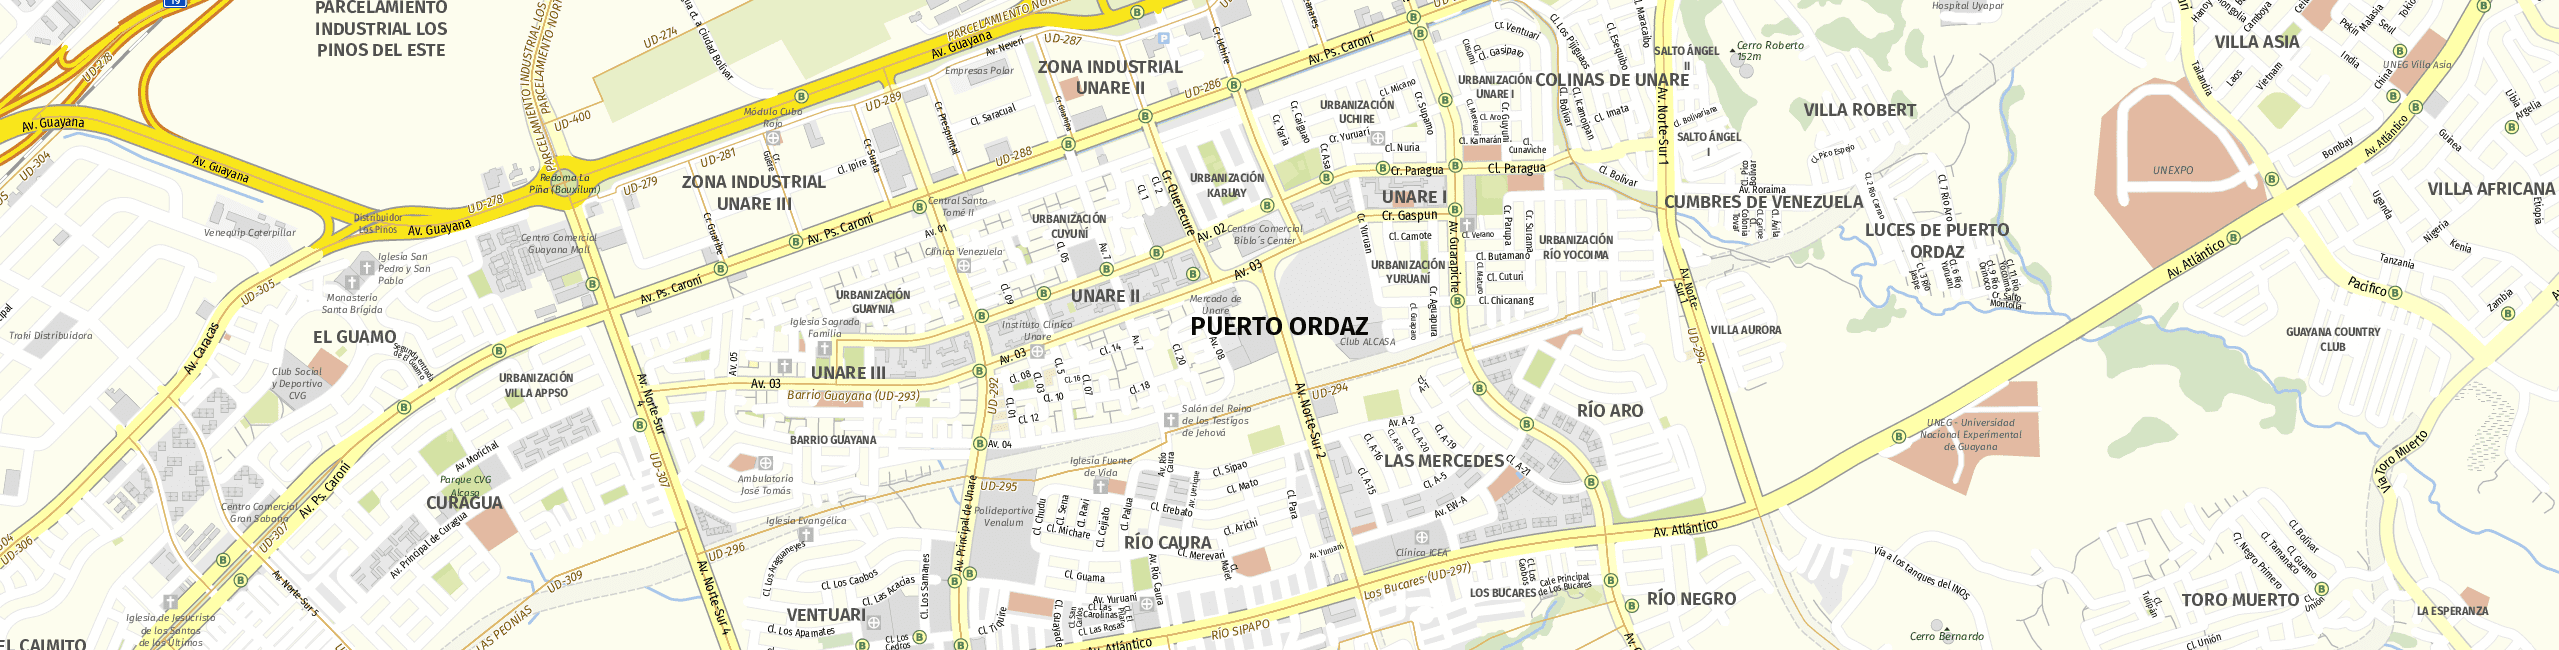 Stadtplan Puerto Ordaz zum Downloaden.